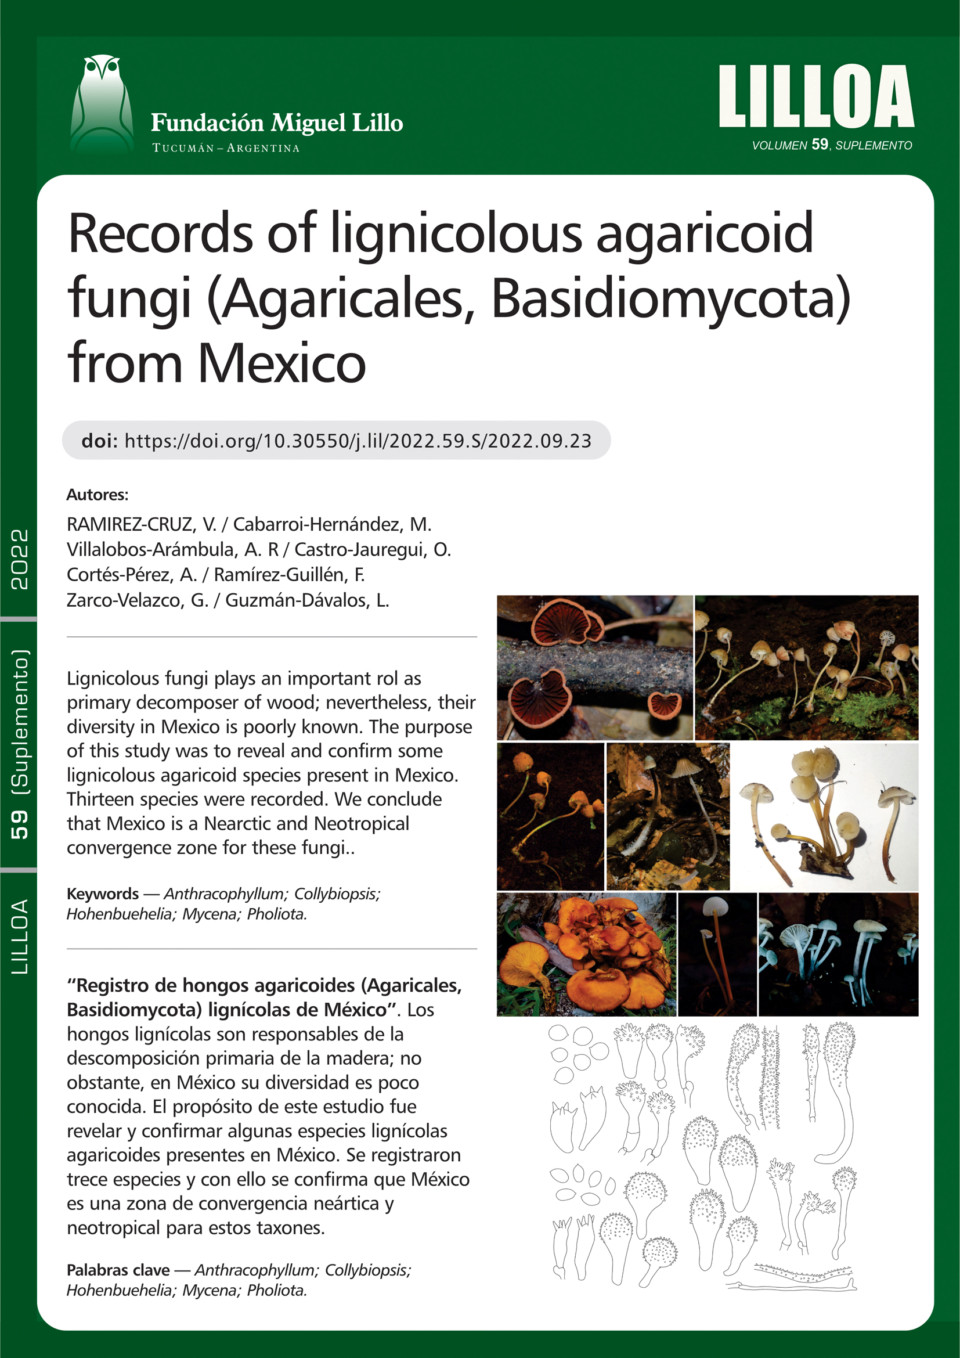 Registro de hongos agaricoides (Agaricales, Basidiomycota) lignícolas de México